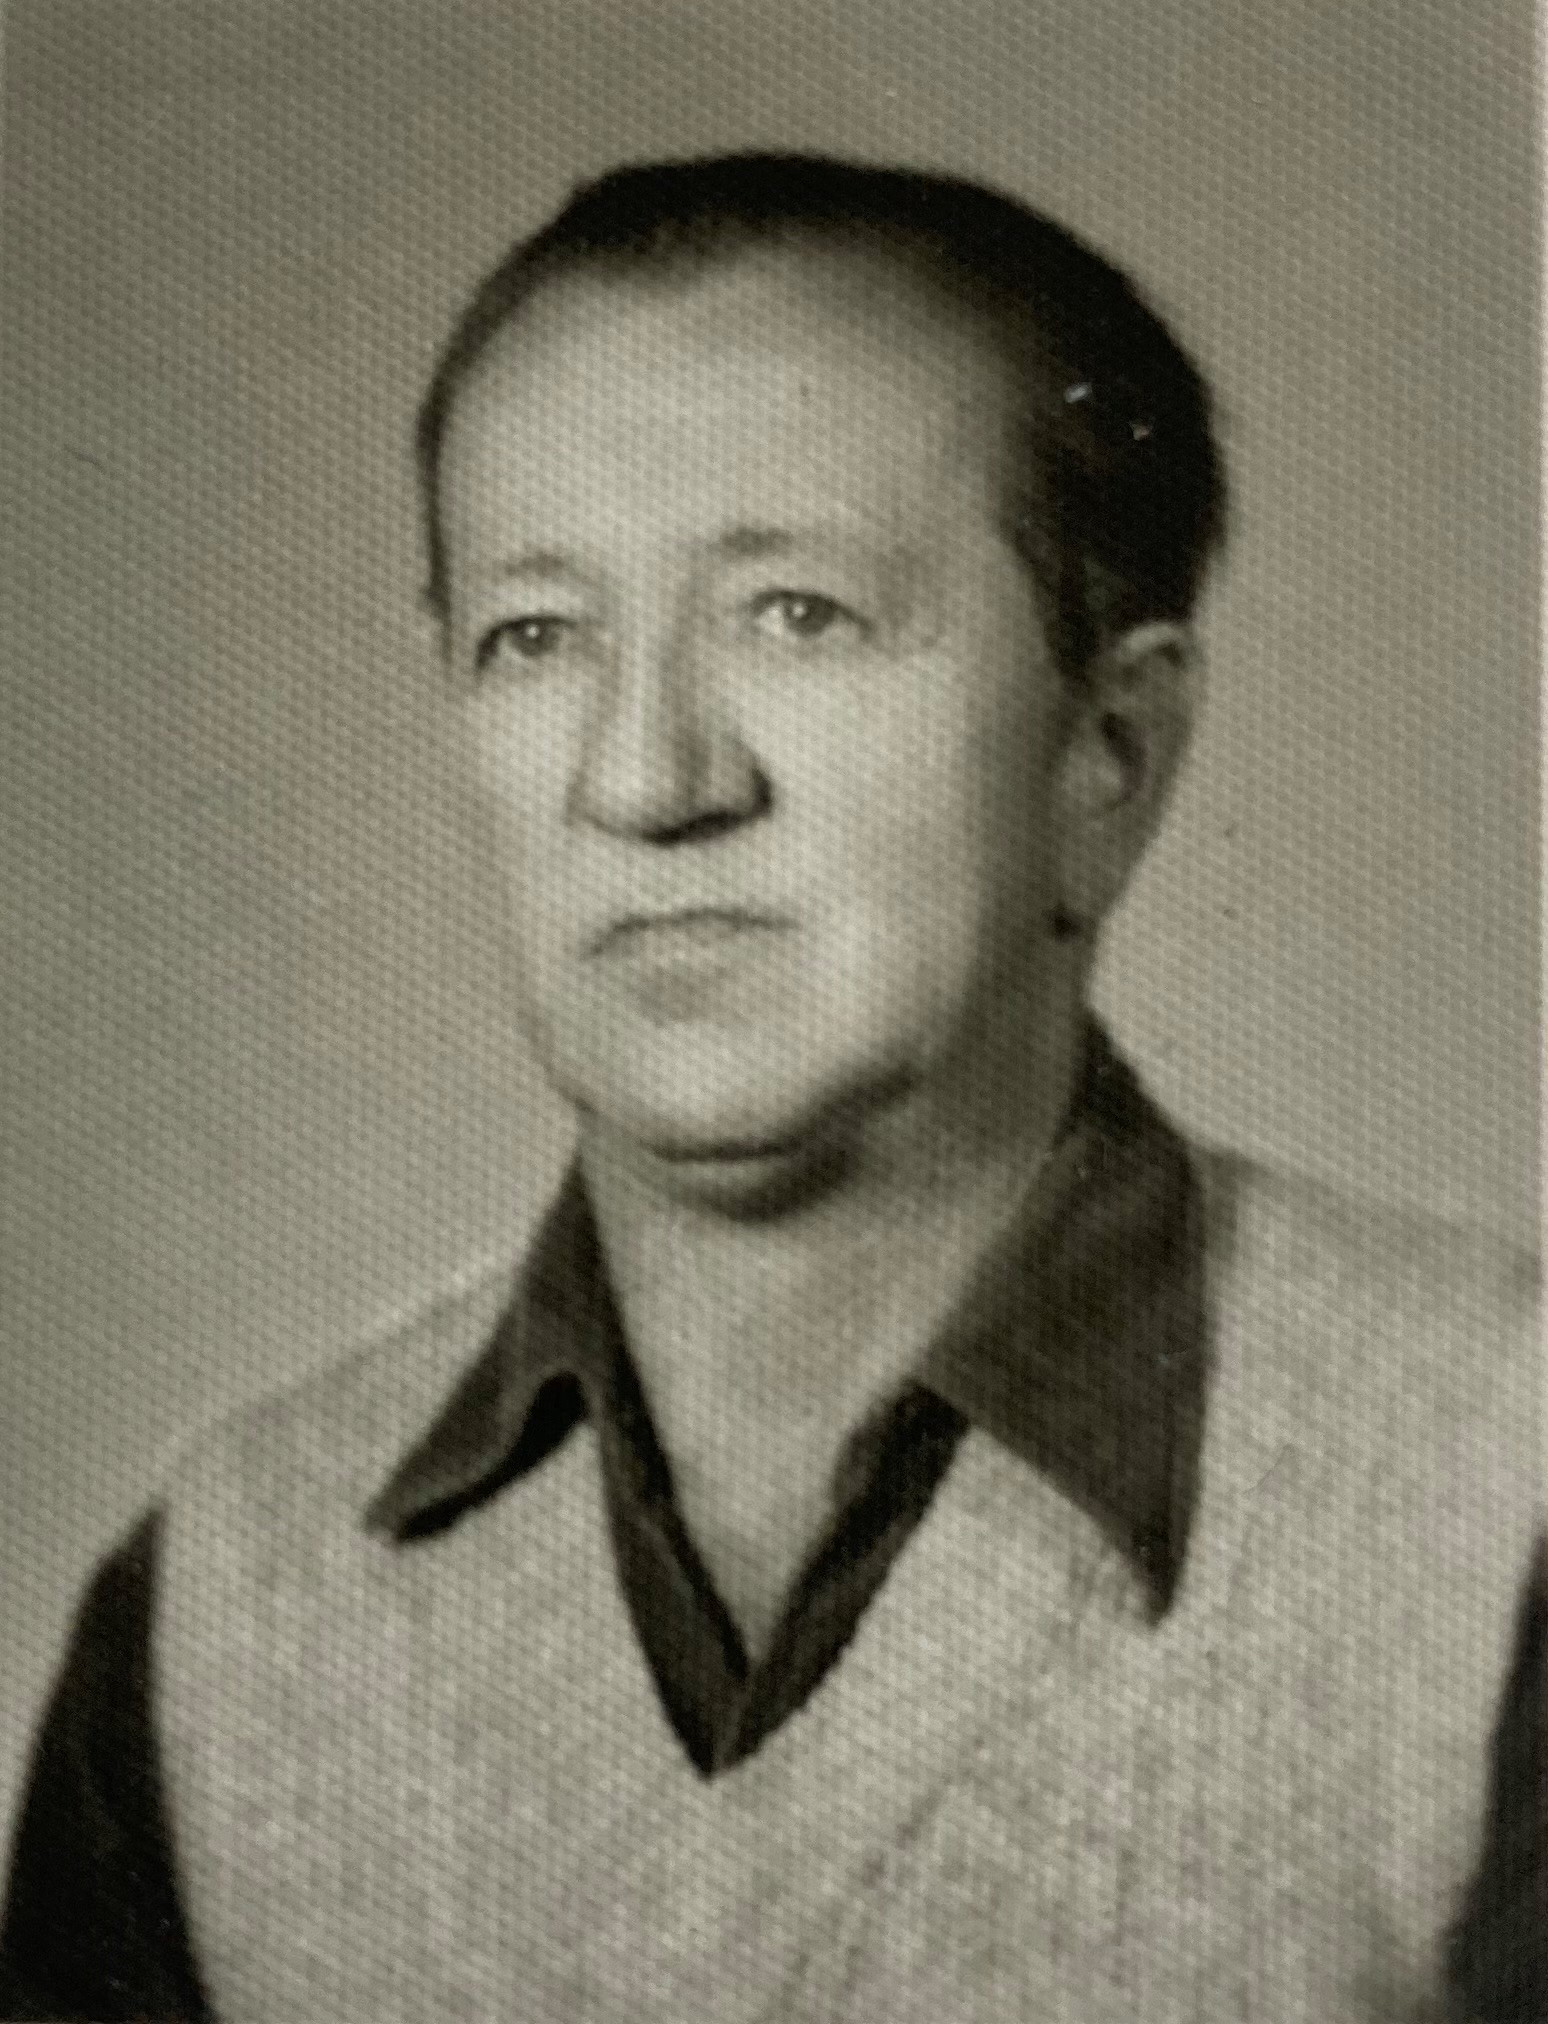 Czarno-biała fotografia przedstawiająca portret Eugeniusza Kowalczyka po wojnie.